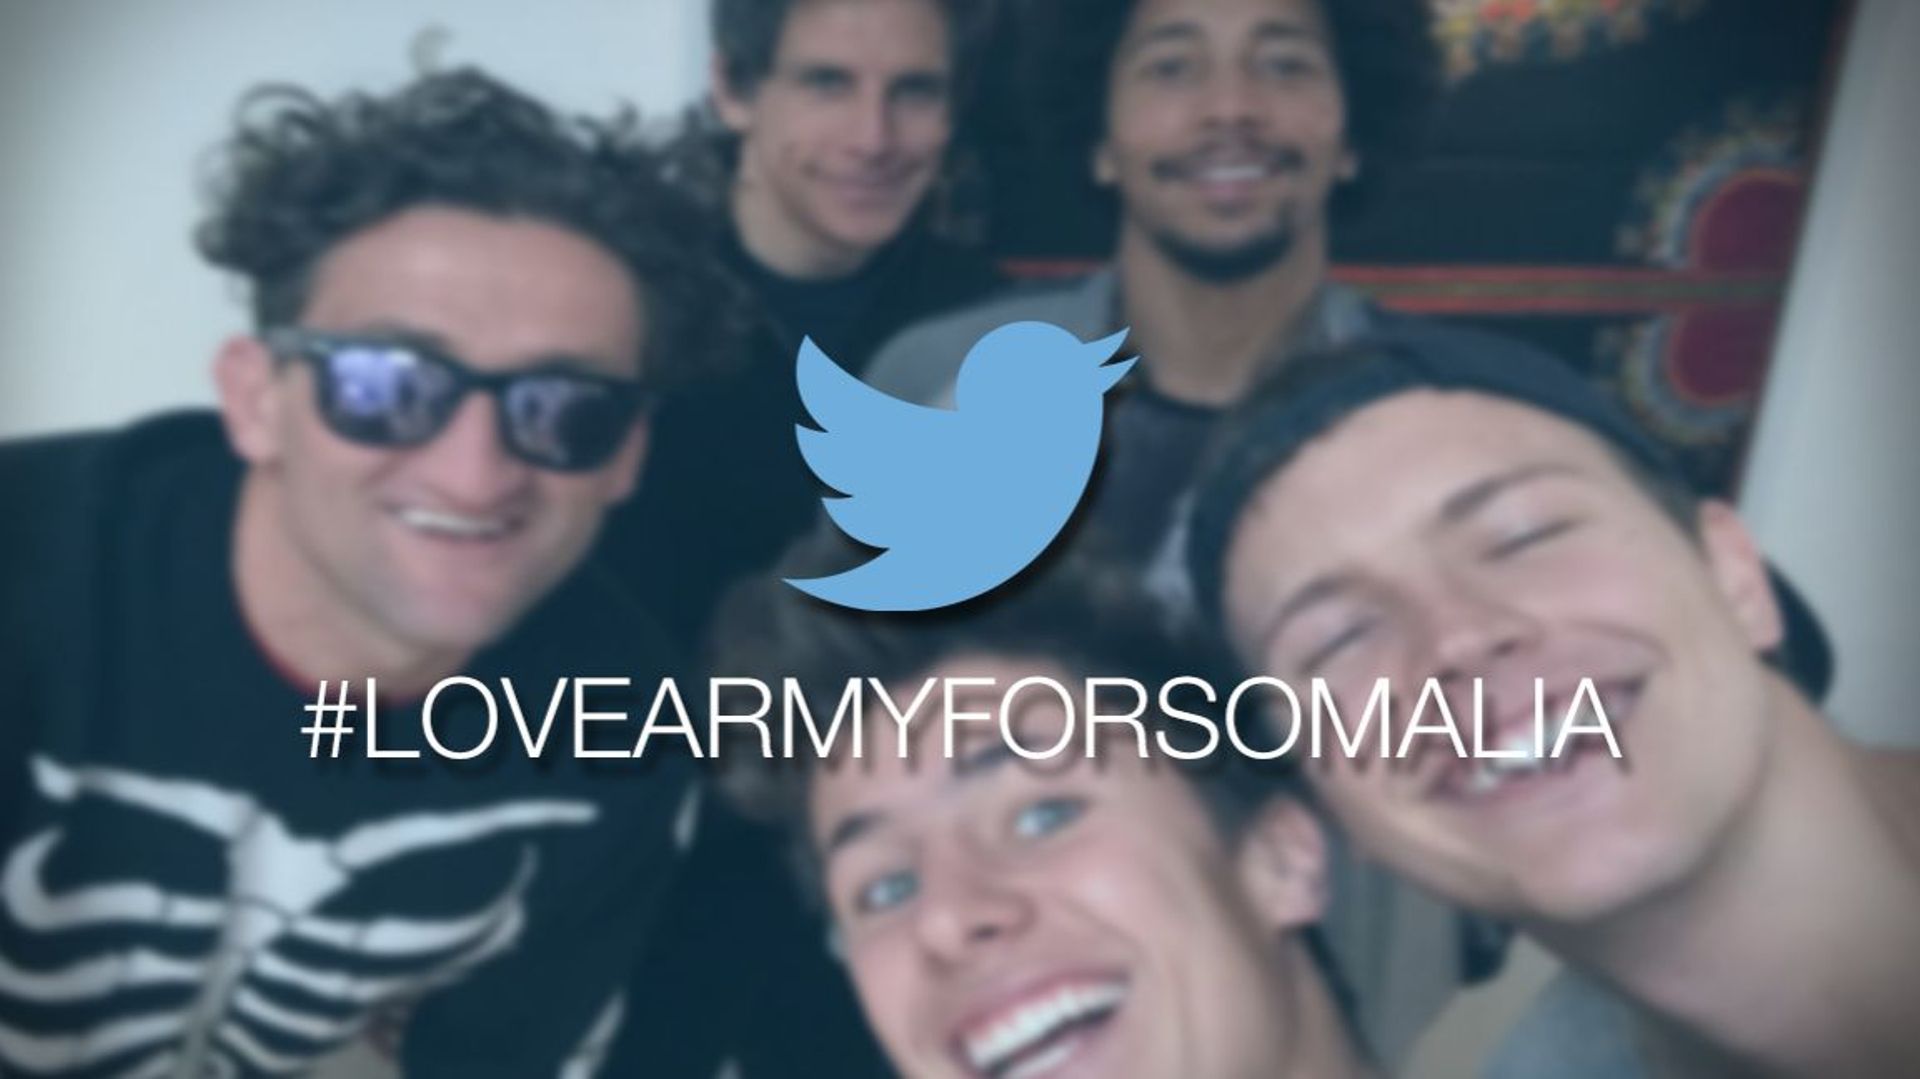 Jérôme Jarre monte la "Love Army For Somalia" et casse Internet